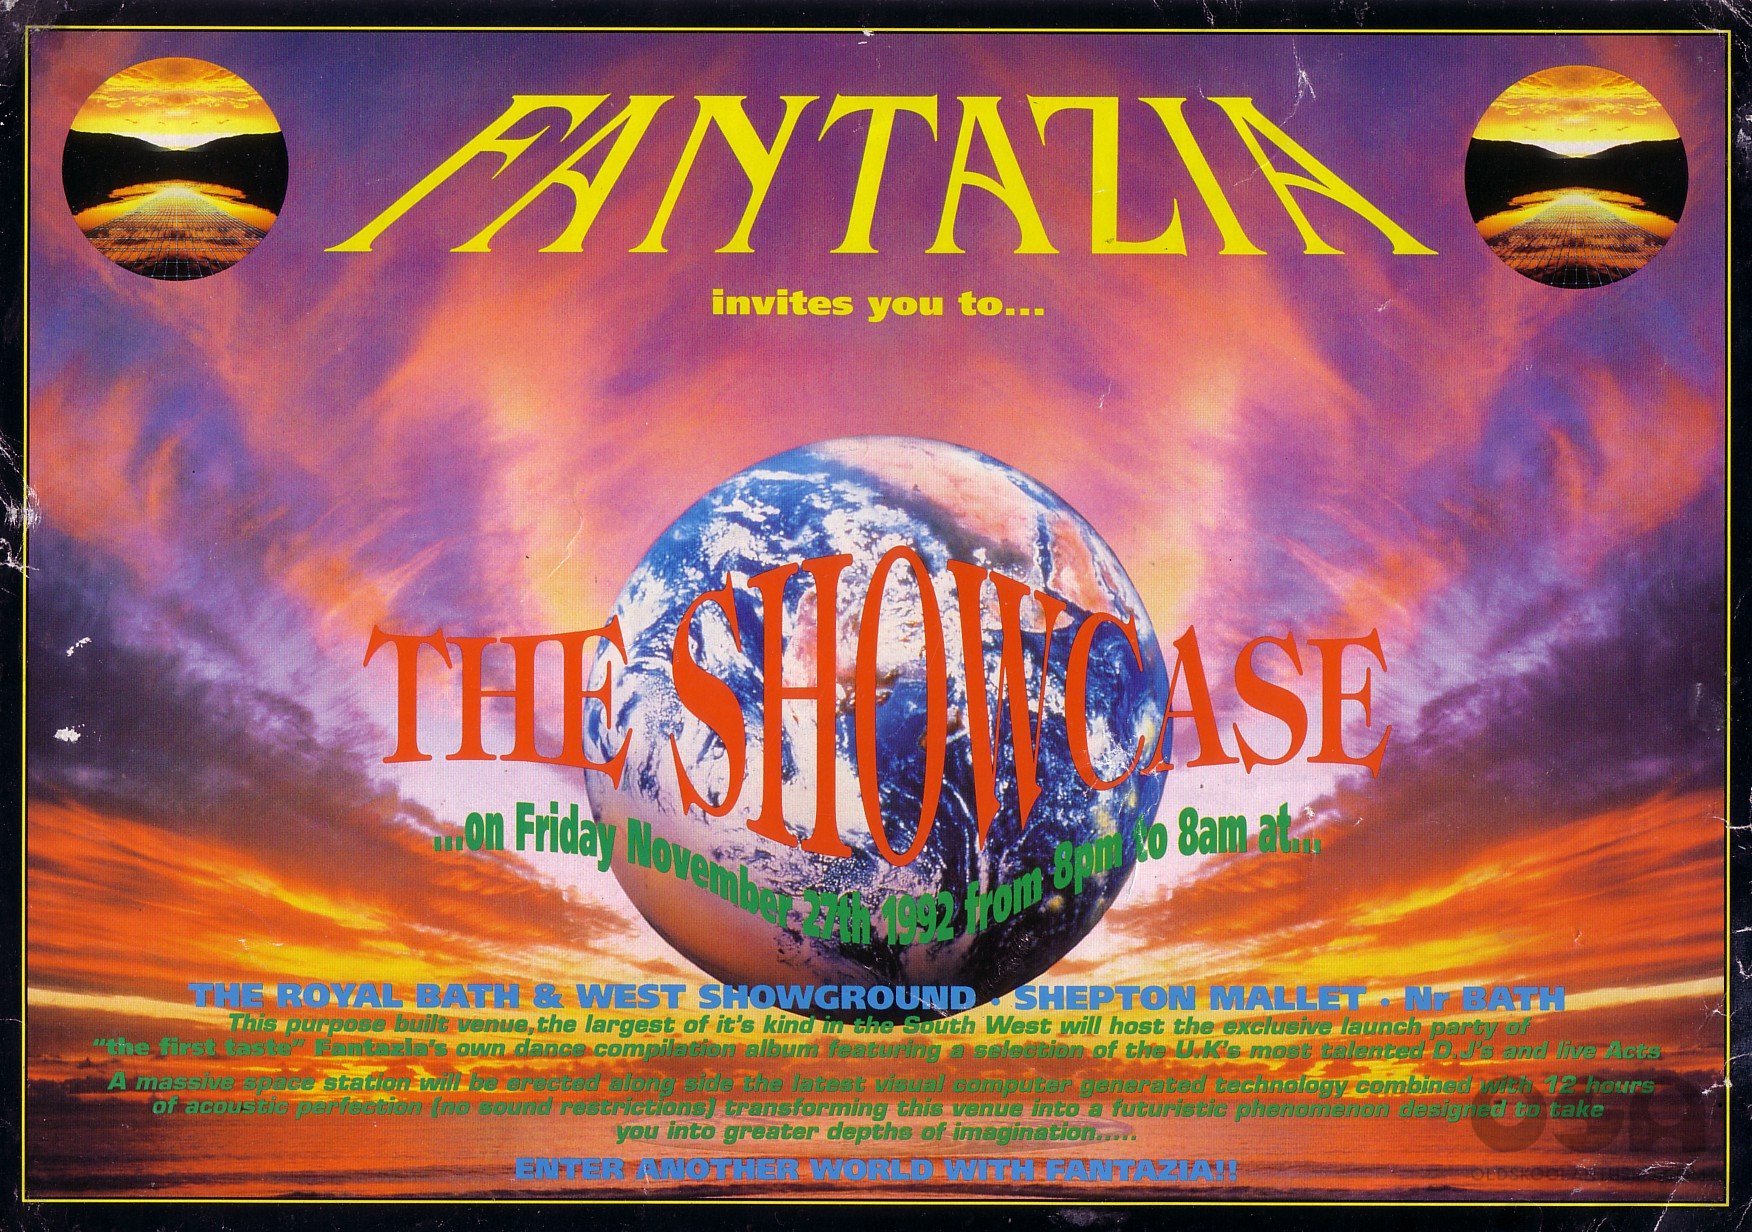 1_Fantazia_The_Showcase_Fri_Nov_27th_1992___The_Royal_Bath___West_Showground_Nr_Bath.jpg